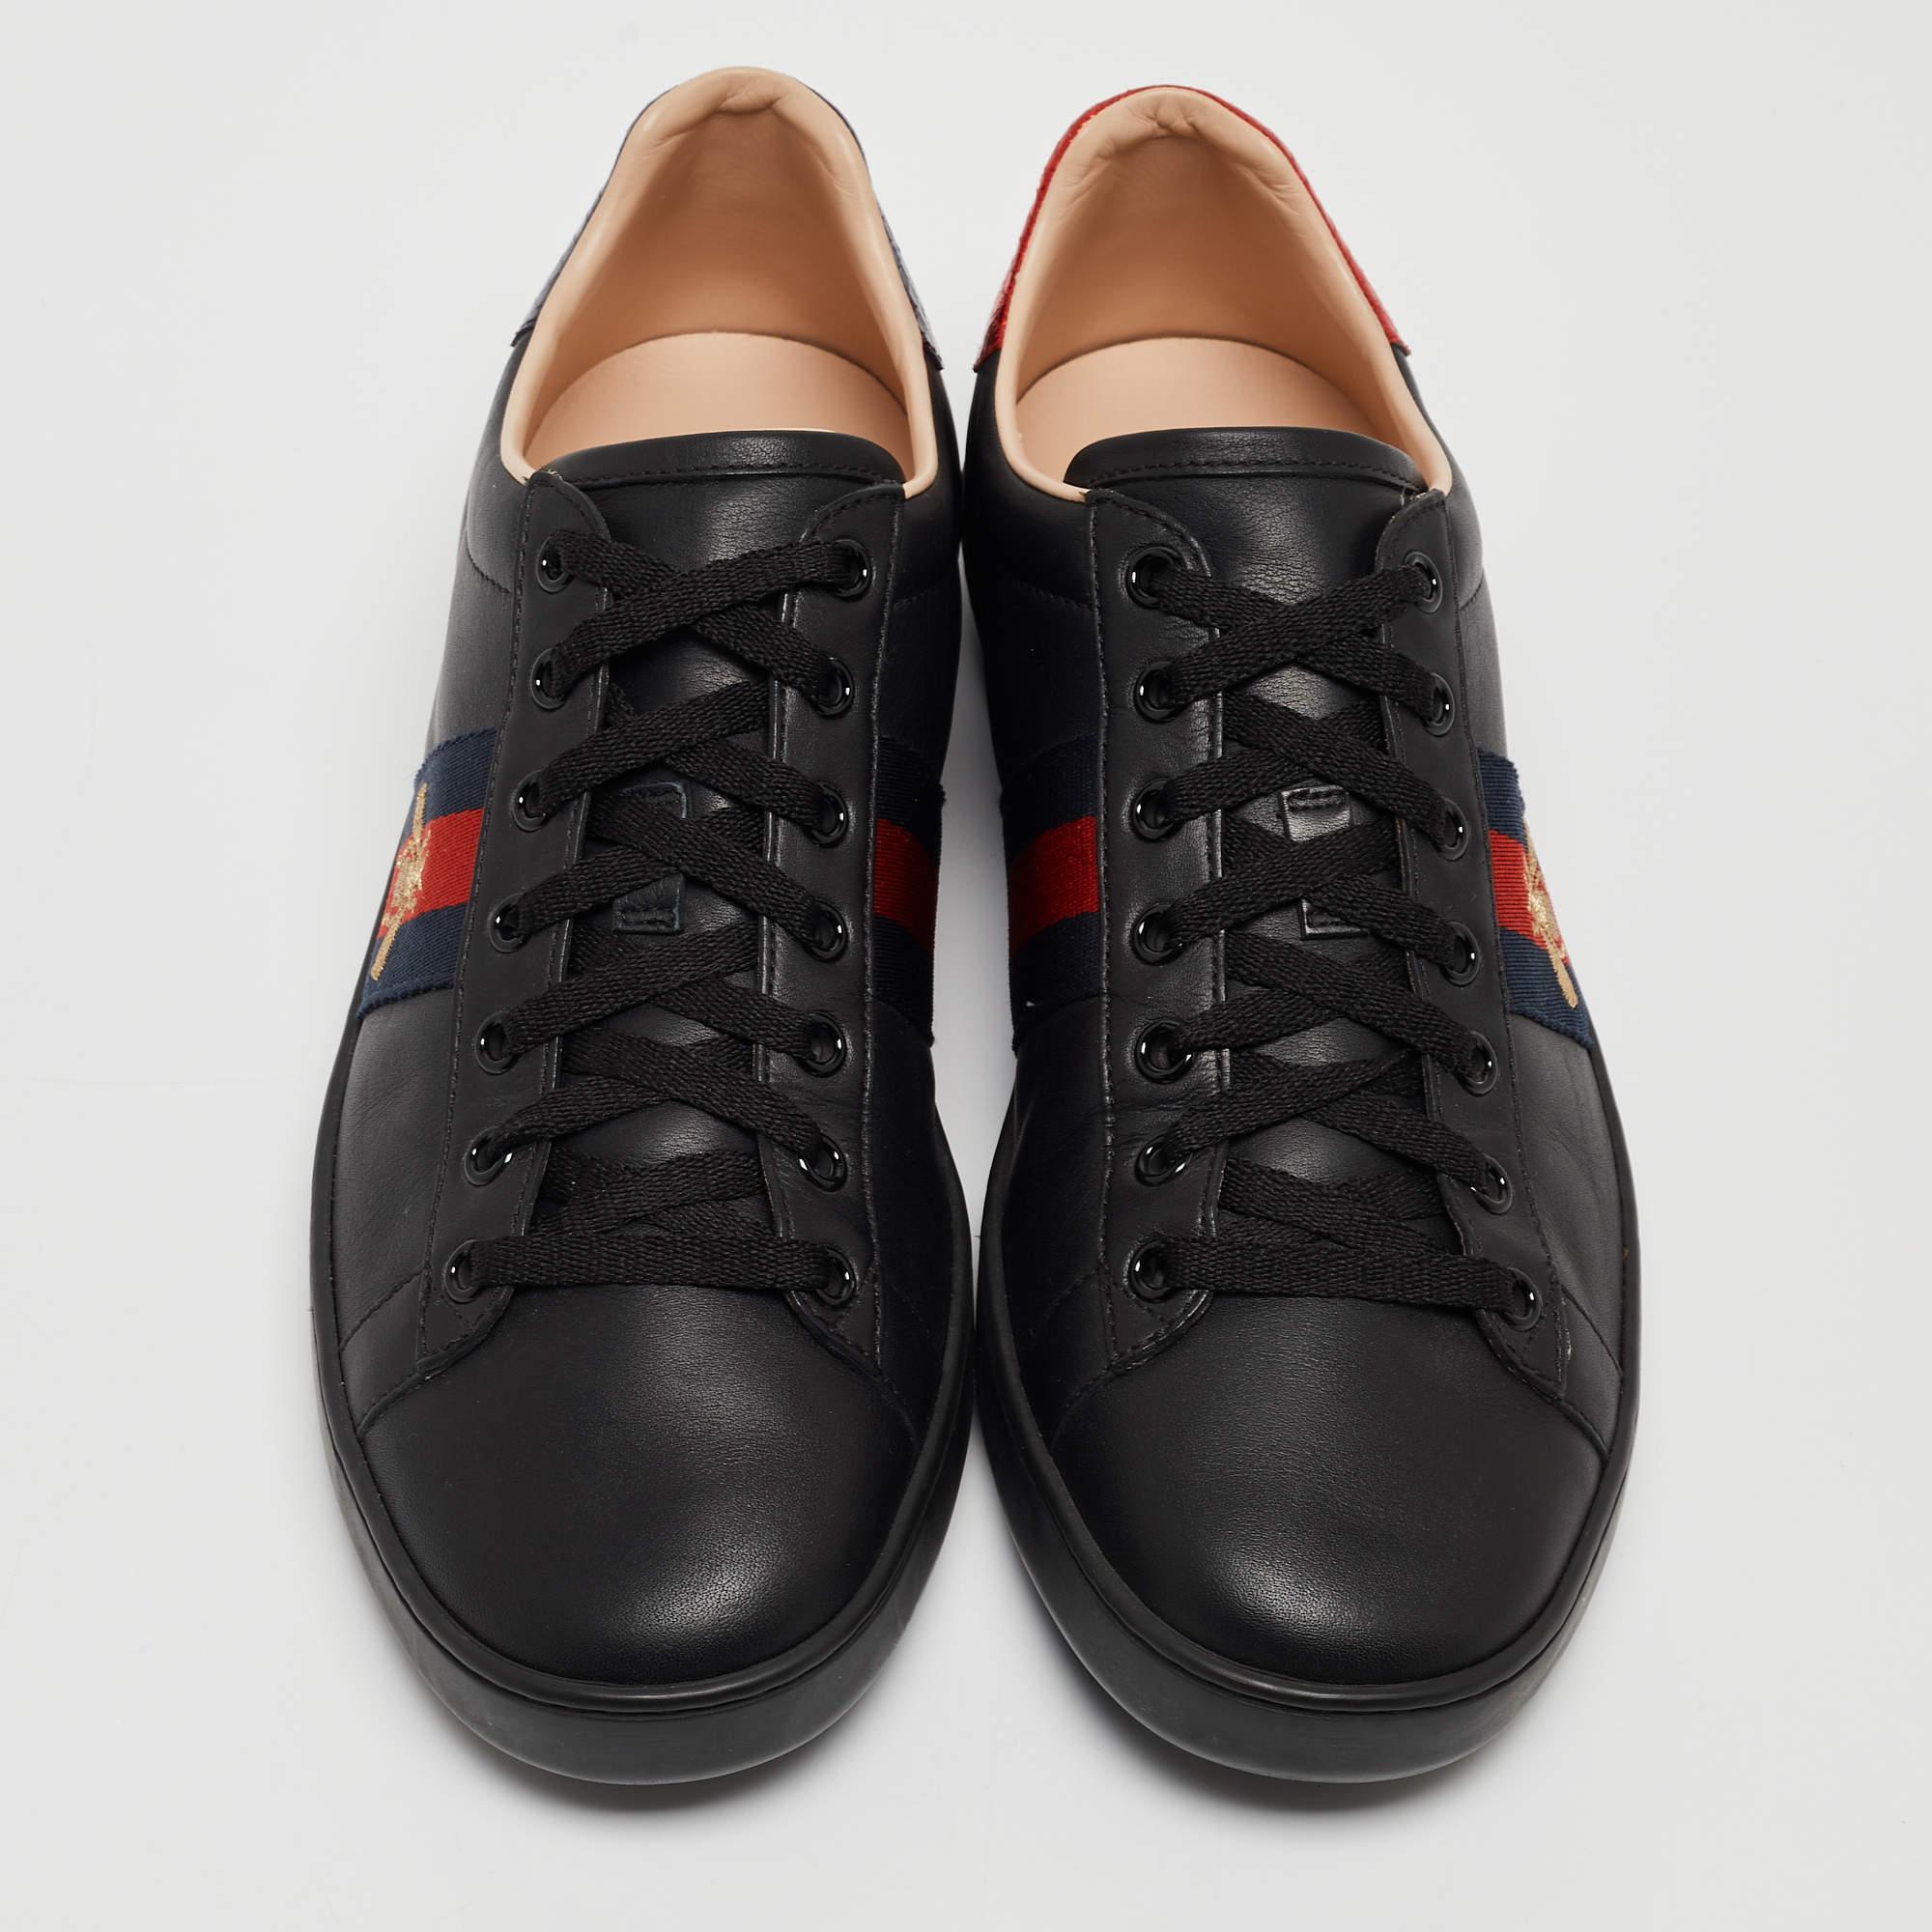 Modernisez votre style avec ces baskets Ace noires de Gucci. Méticuleusement conçues pour la mode et le confort, elles sont le choix idéal pour une foulée tendance et confortable.

